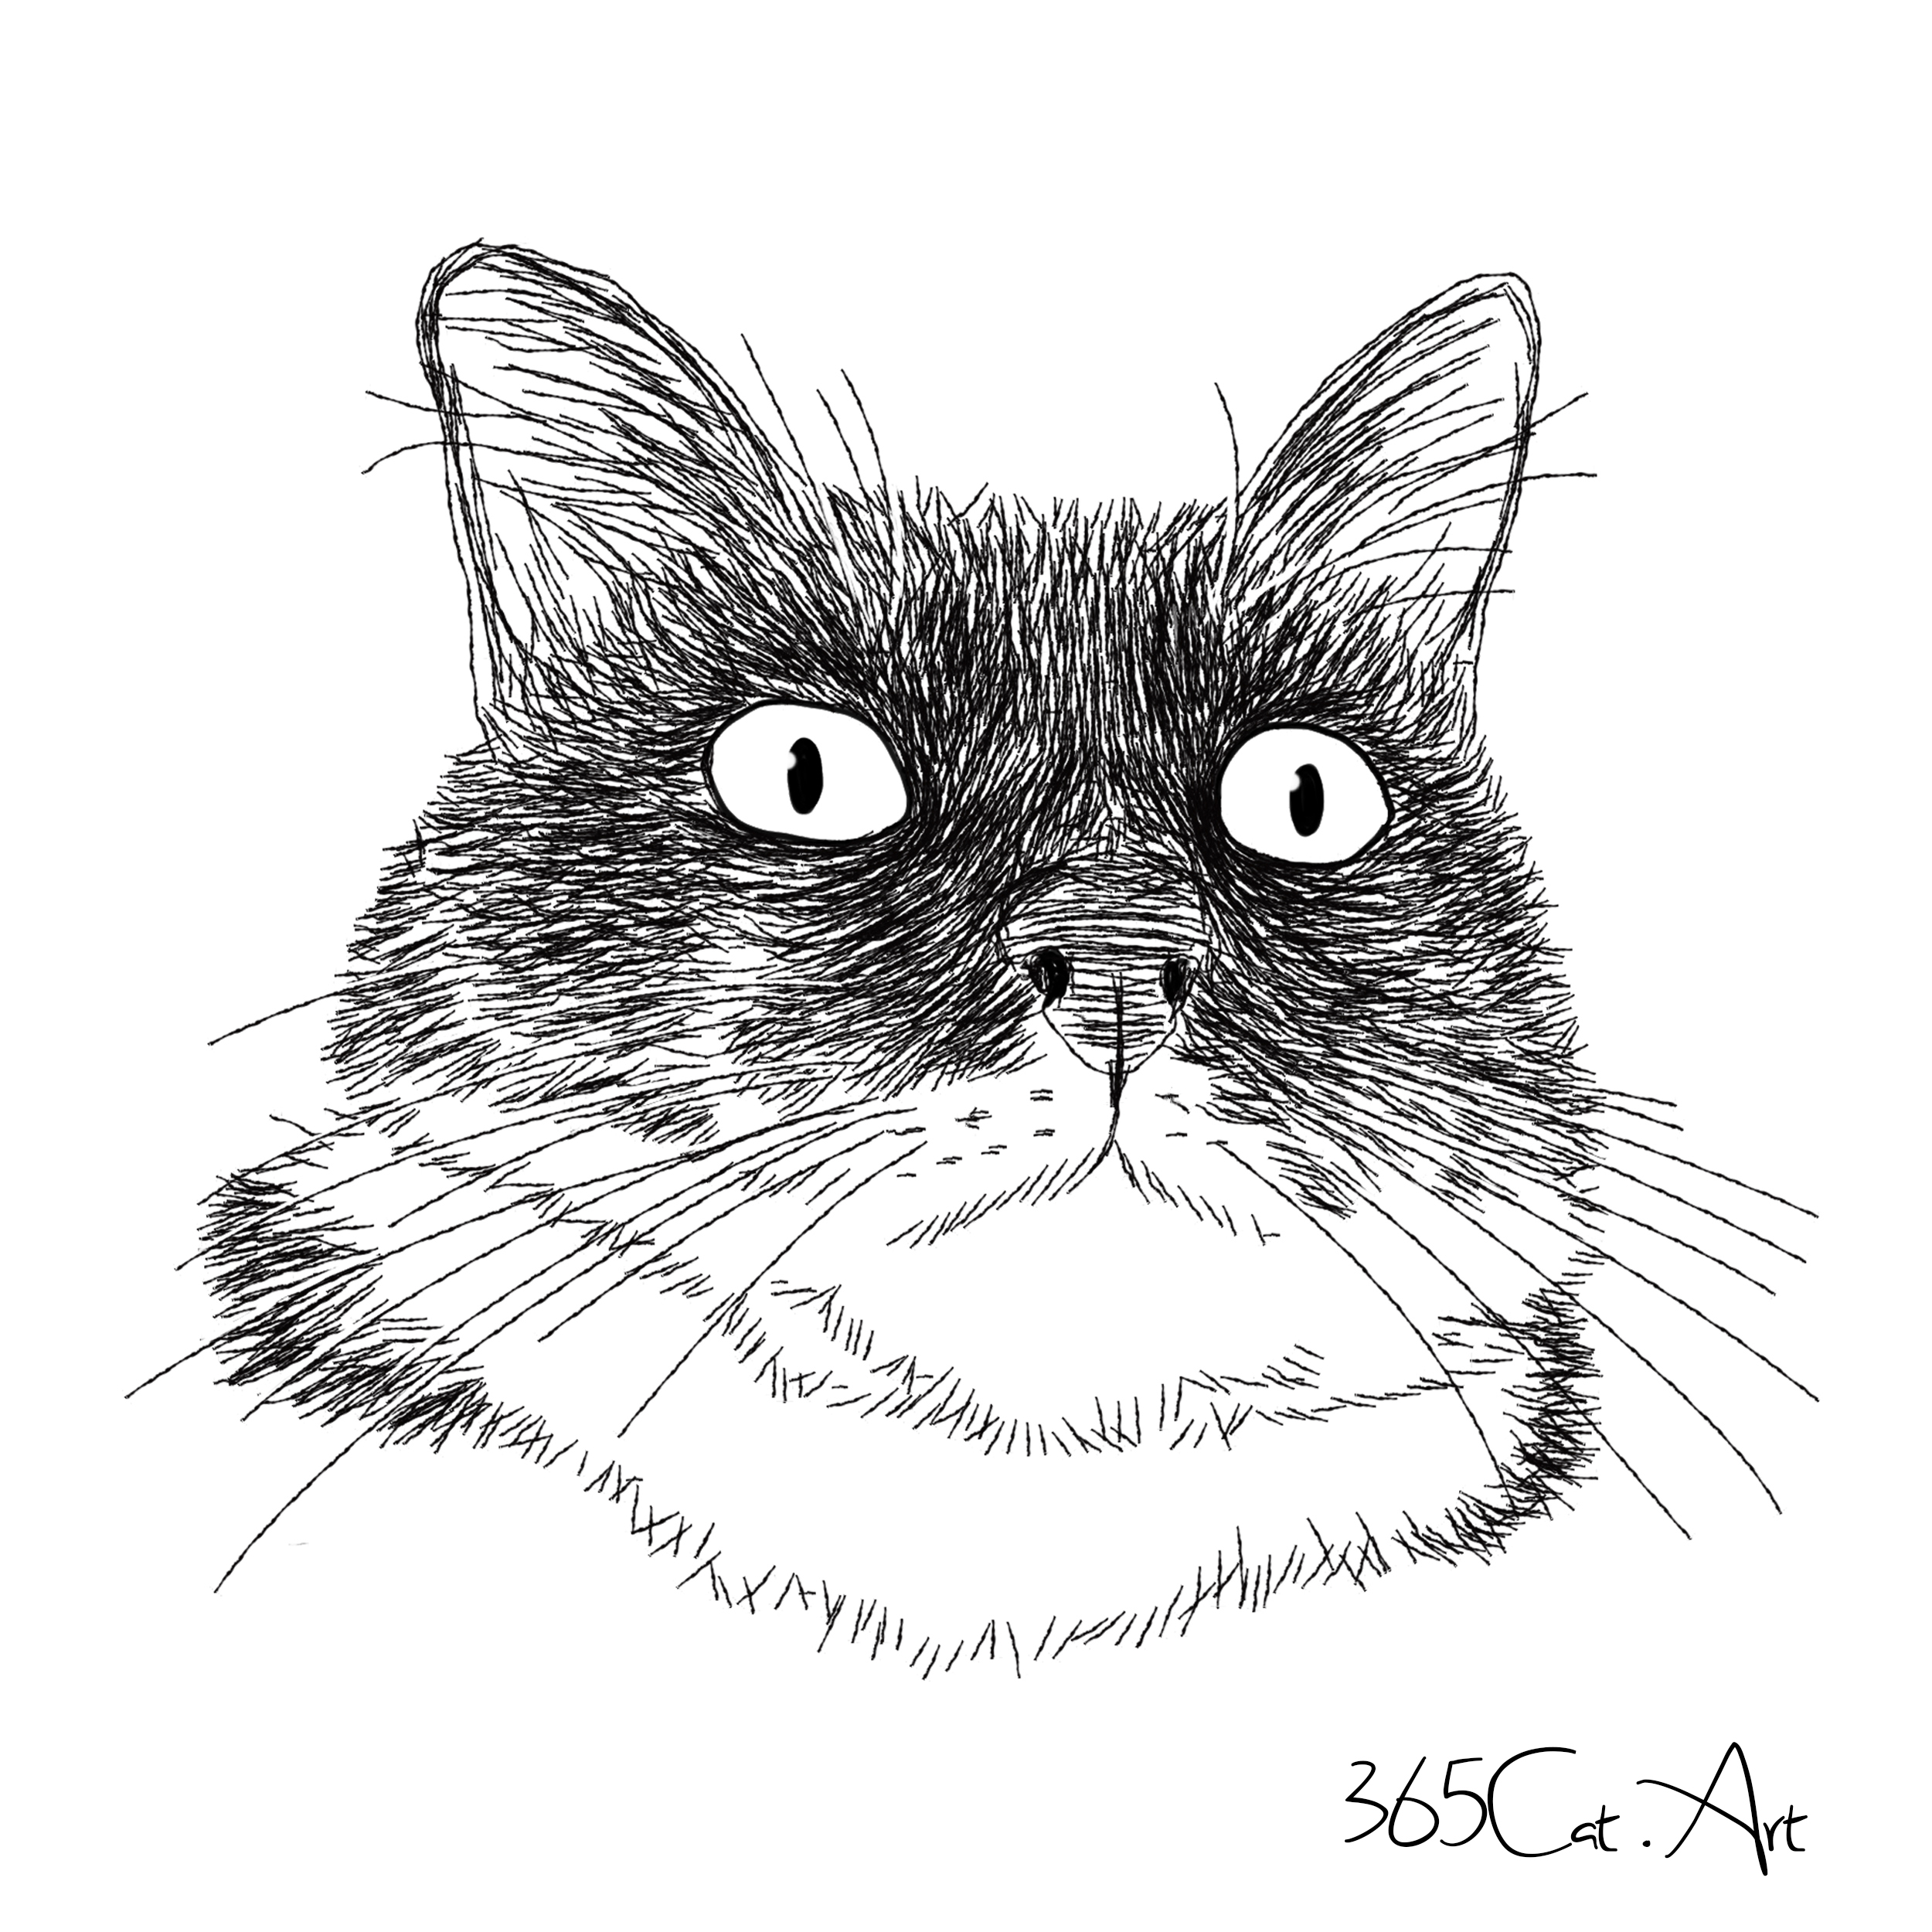 猫の手描きイラスト 似顔絵 白黒 作成 顔のみ 動物 人間可 猫雑貨 グッズ通販 猫や動物イラスト 似顔絵作成 365cat Art